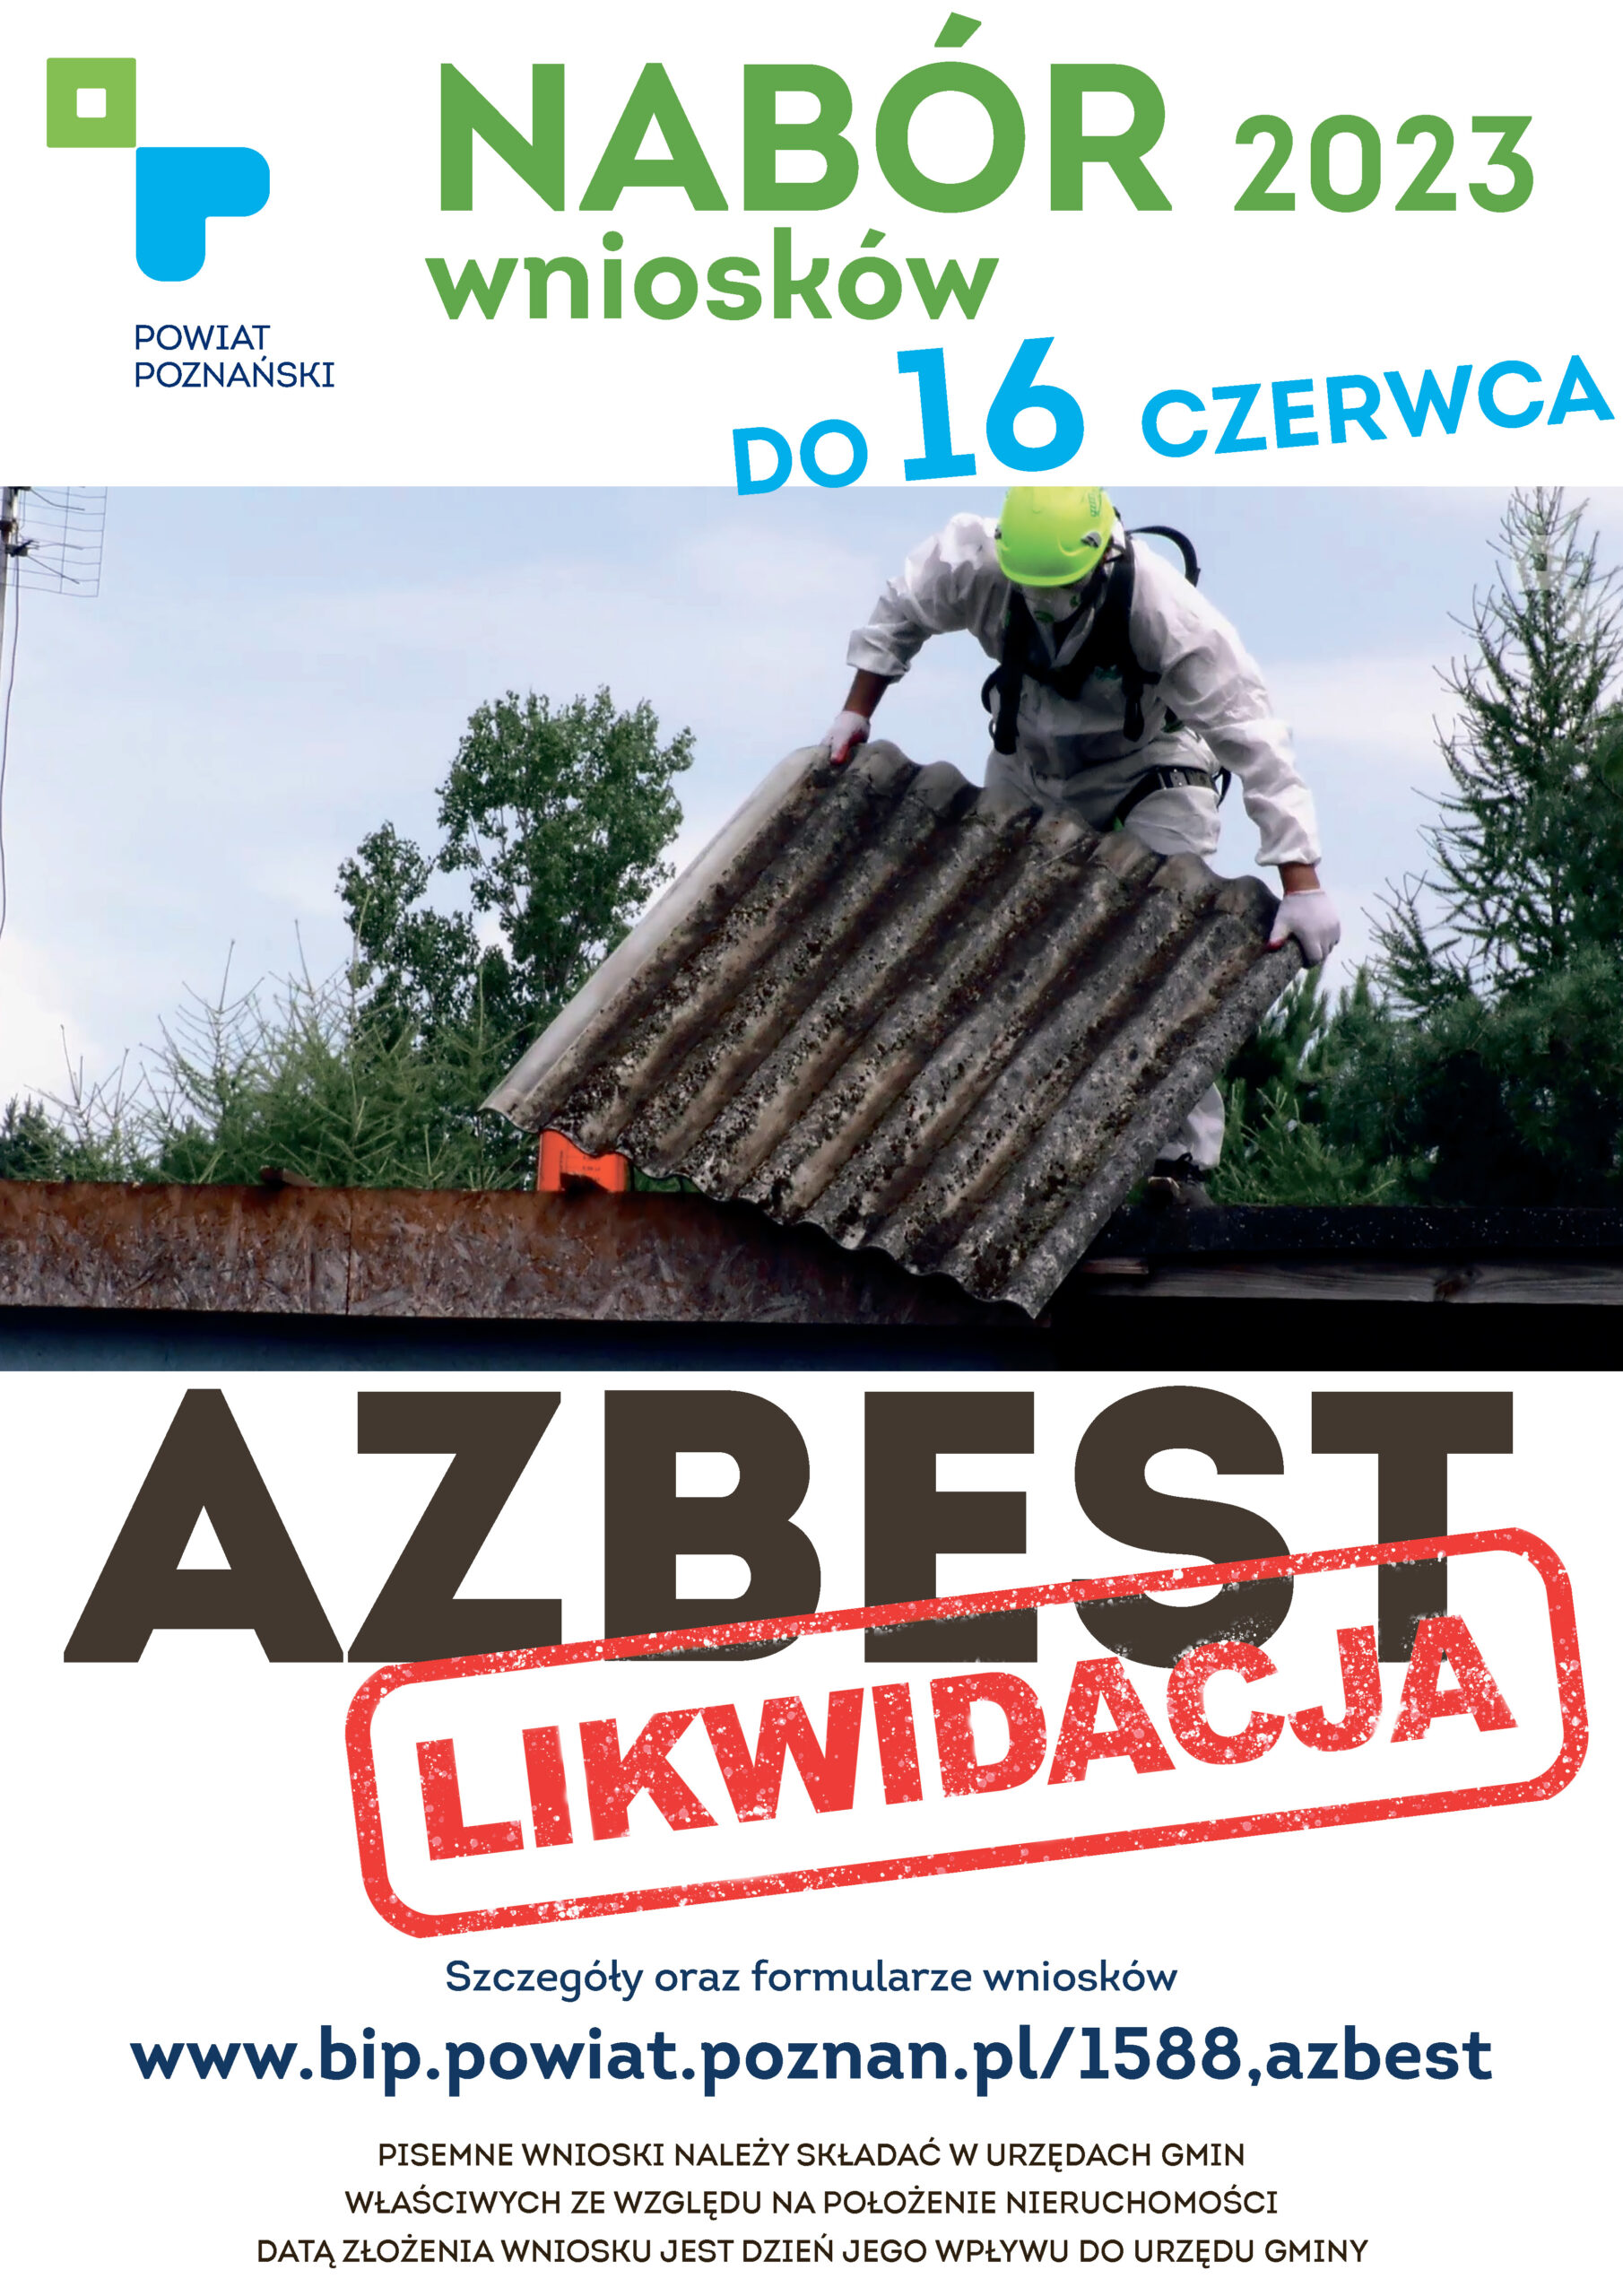 Plakat - program likwidacji azbestu - nabór wniosków do 16 czerwca br.